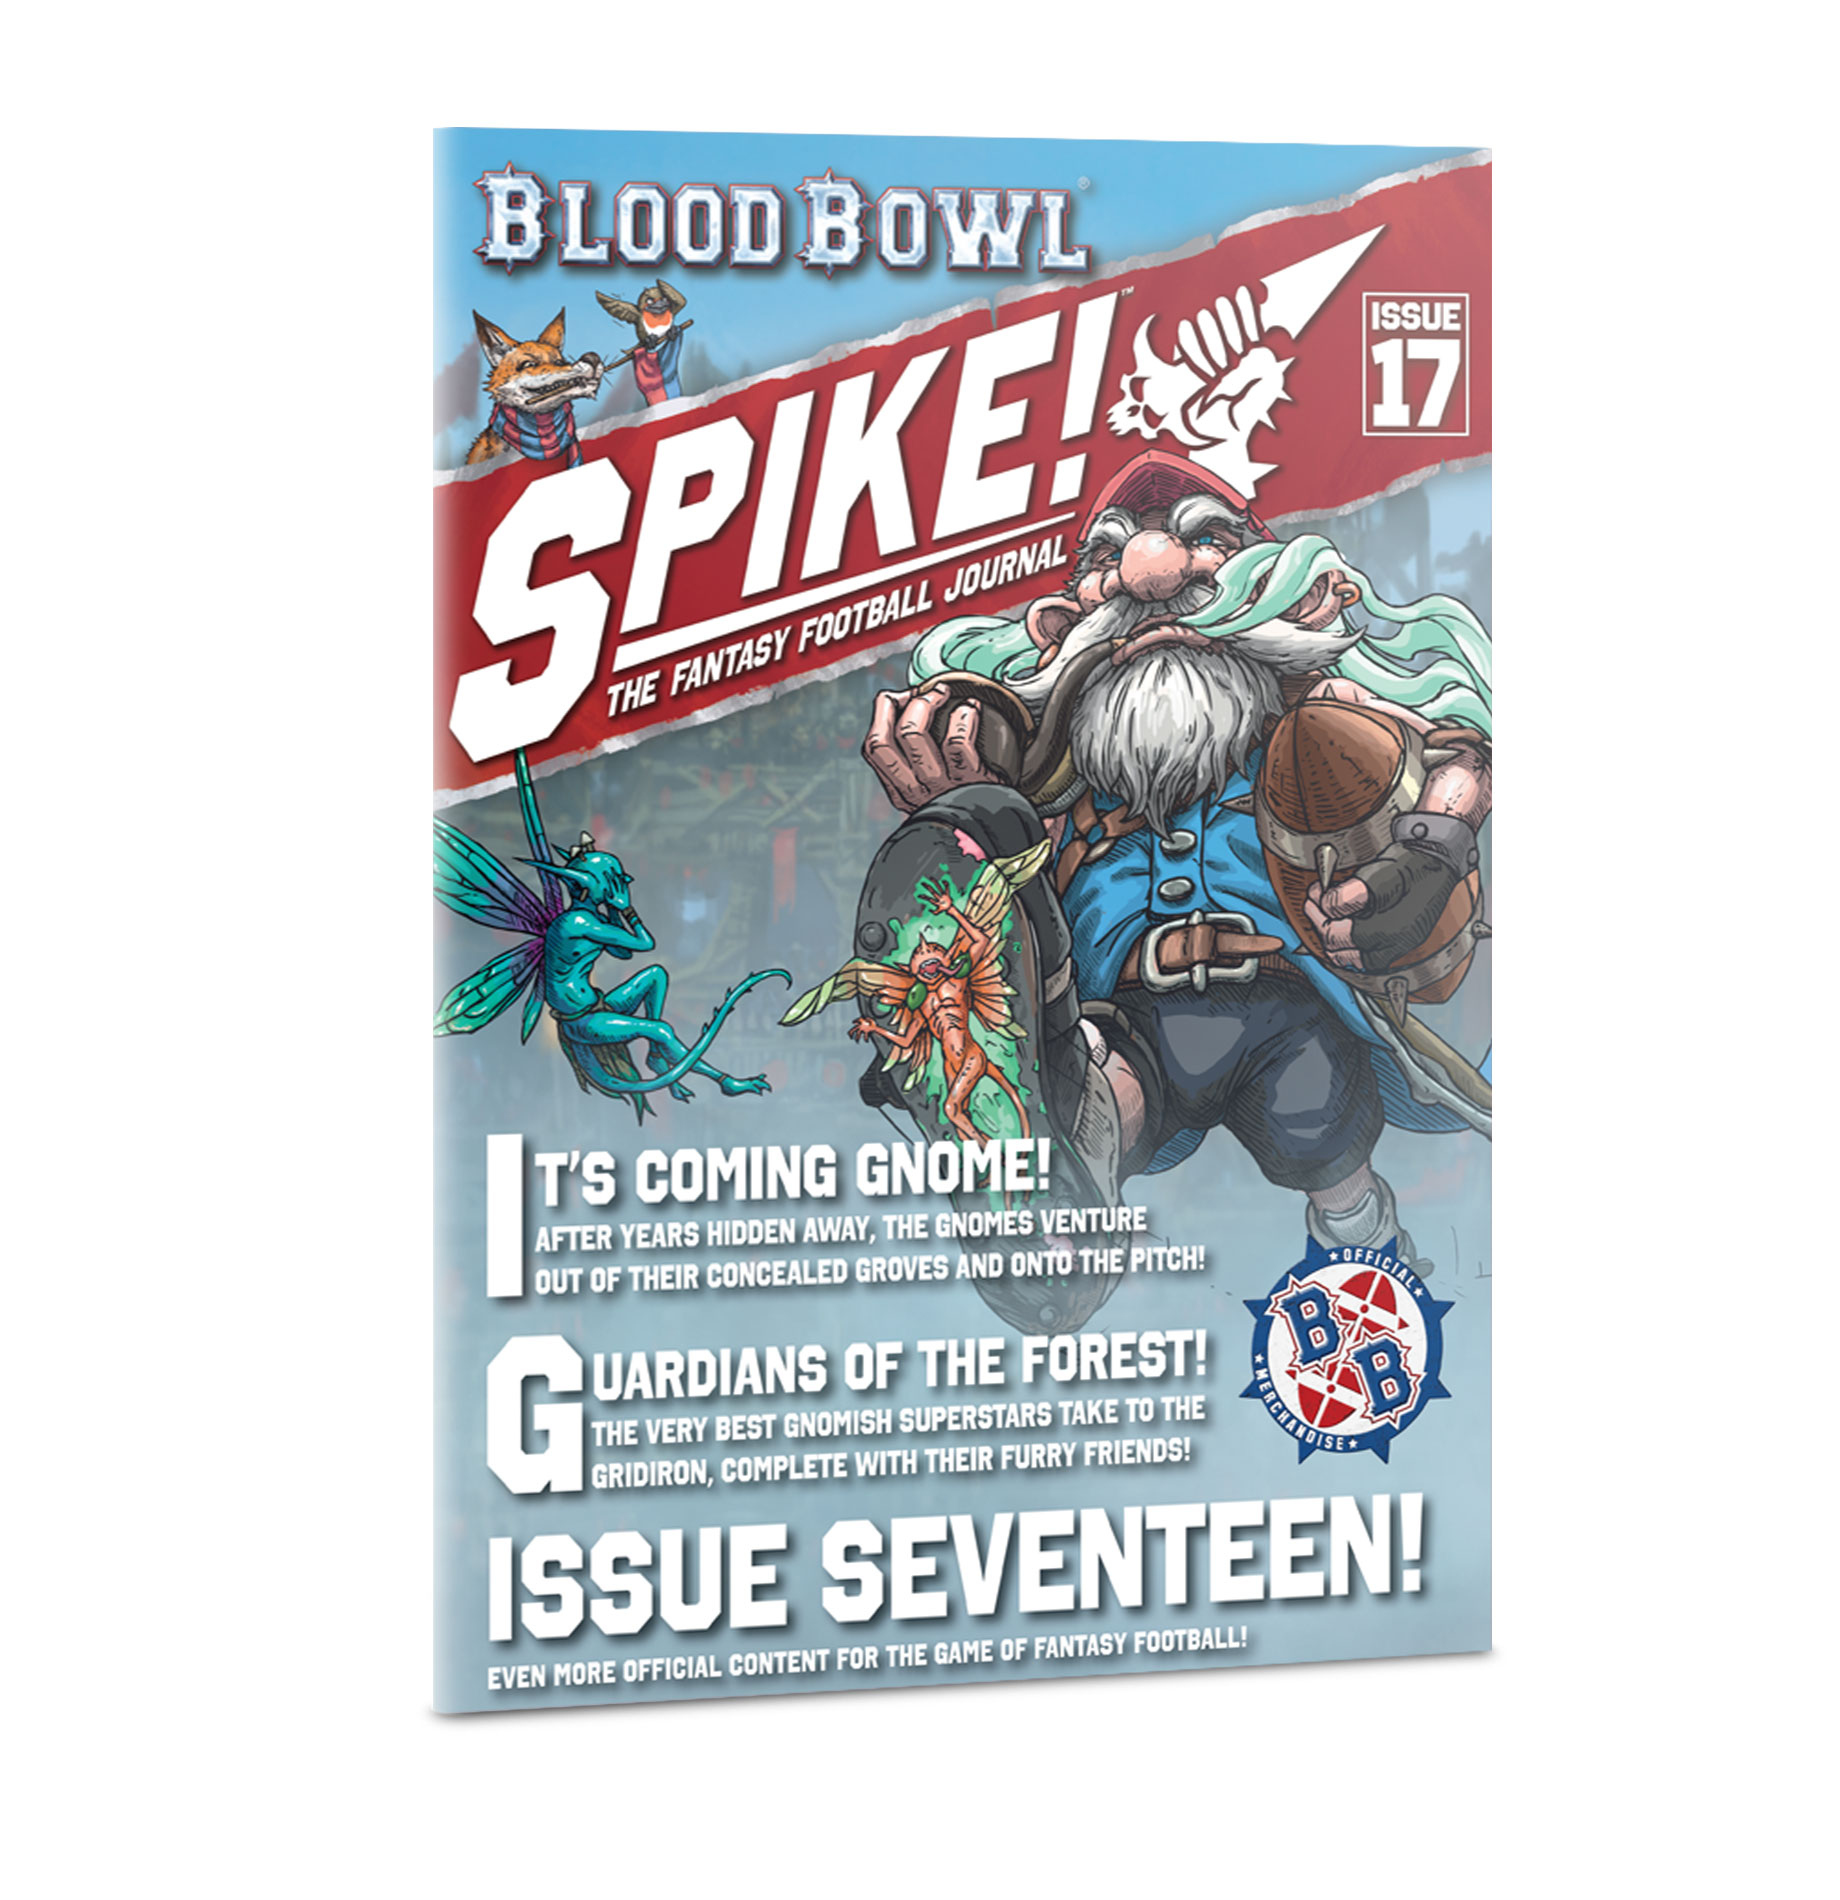 Blood Bowl: Spire! Journal 17 